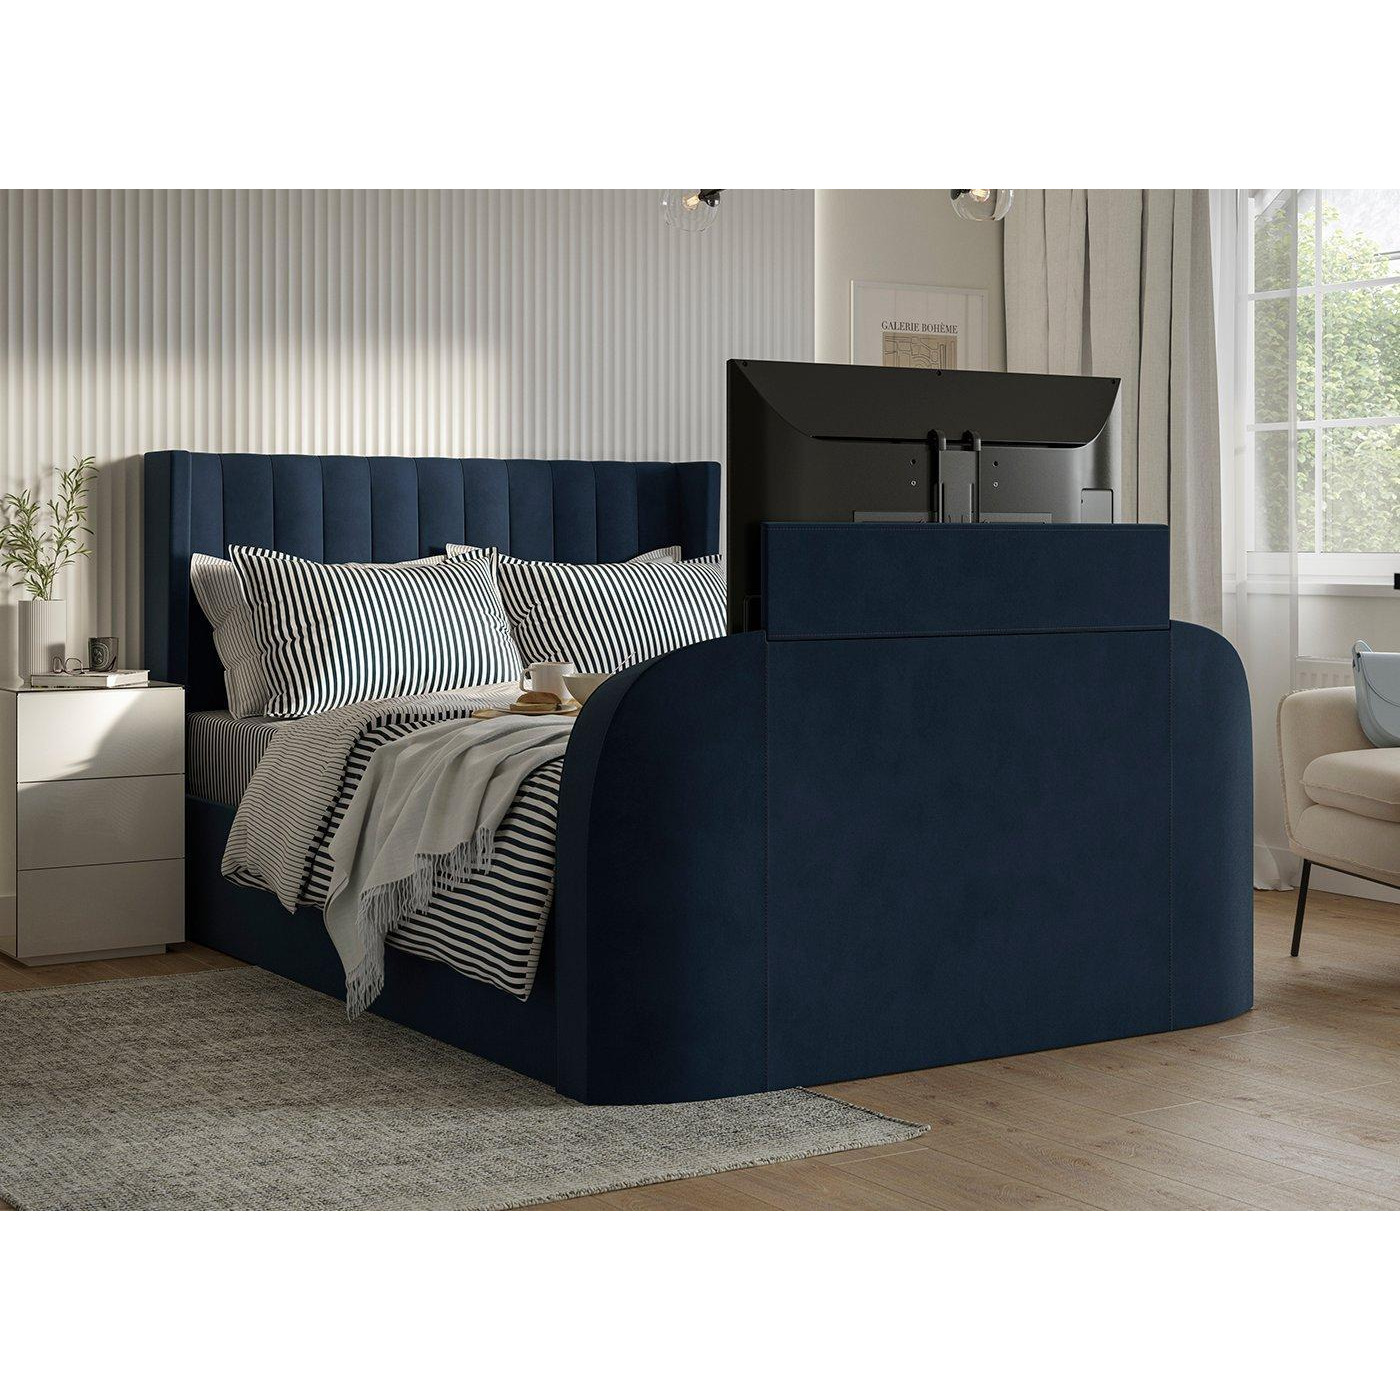 Foley Upholstered TV Bed Frame - 6'0 Super King - Blue